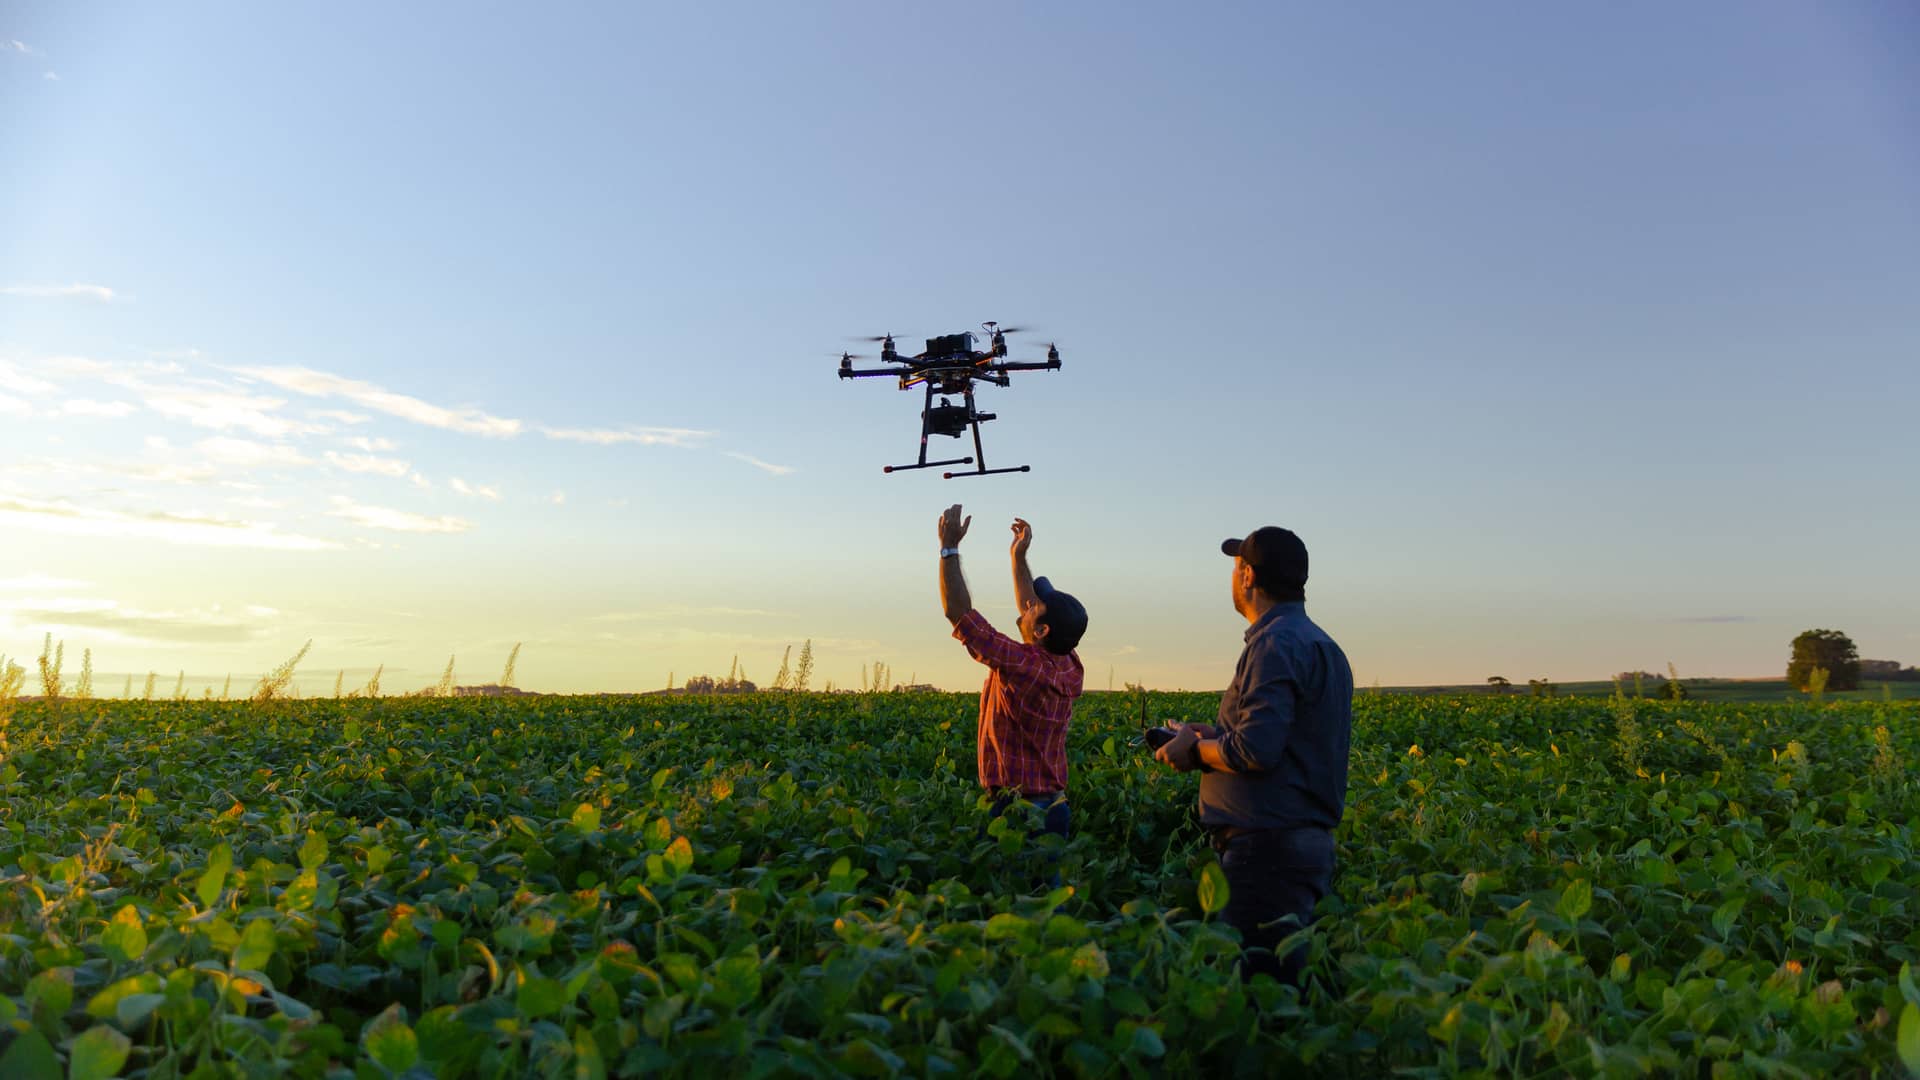 Hombre sobrevolando su dron con seguro allianz por cultivo de soja